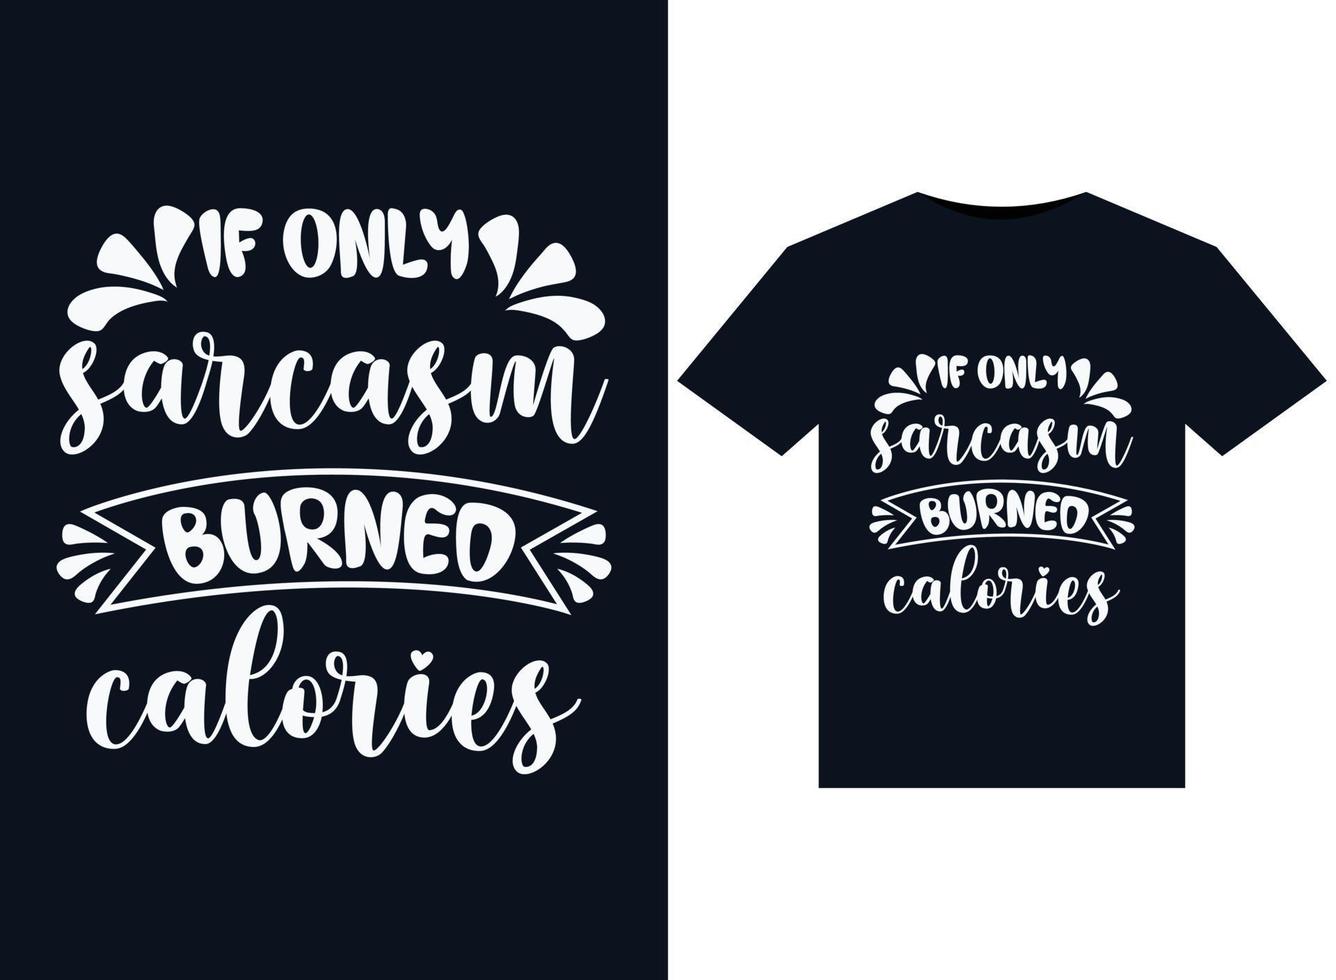 si solo el sarcasmo quemara ilustraciones de calorías para el diseño de camisetas listas para imprimir vector